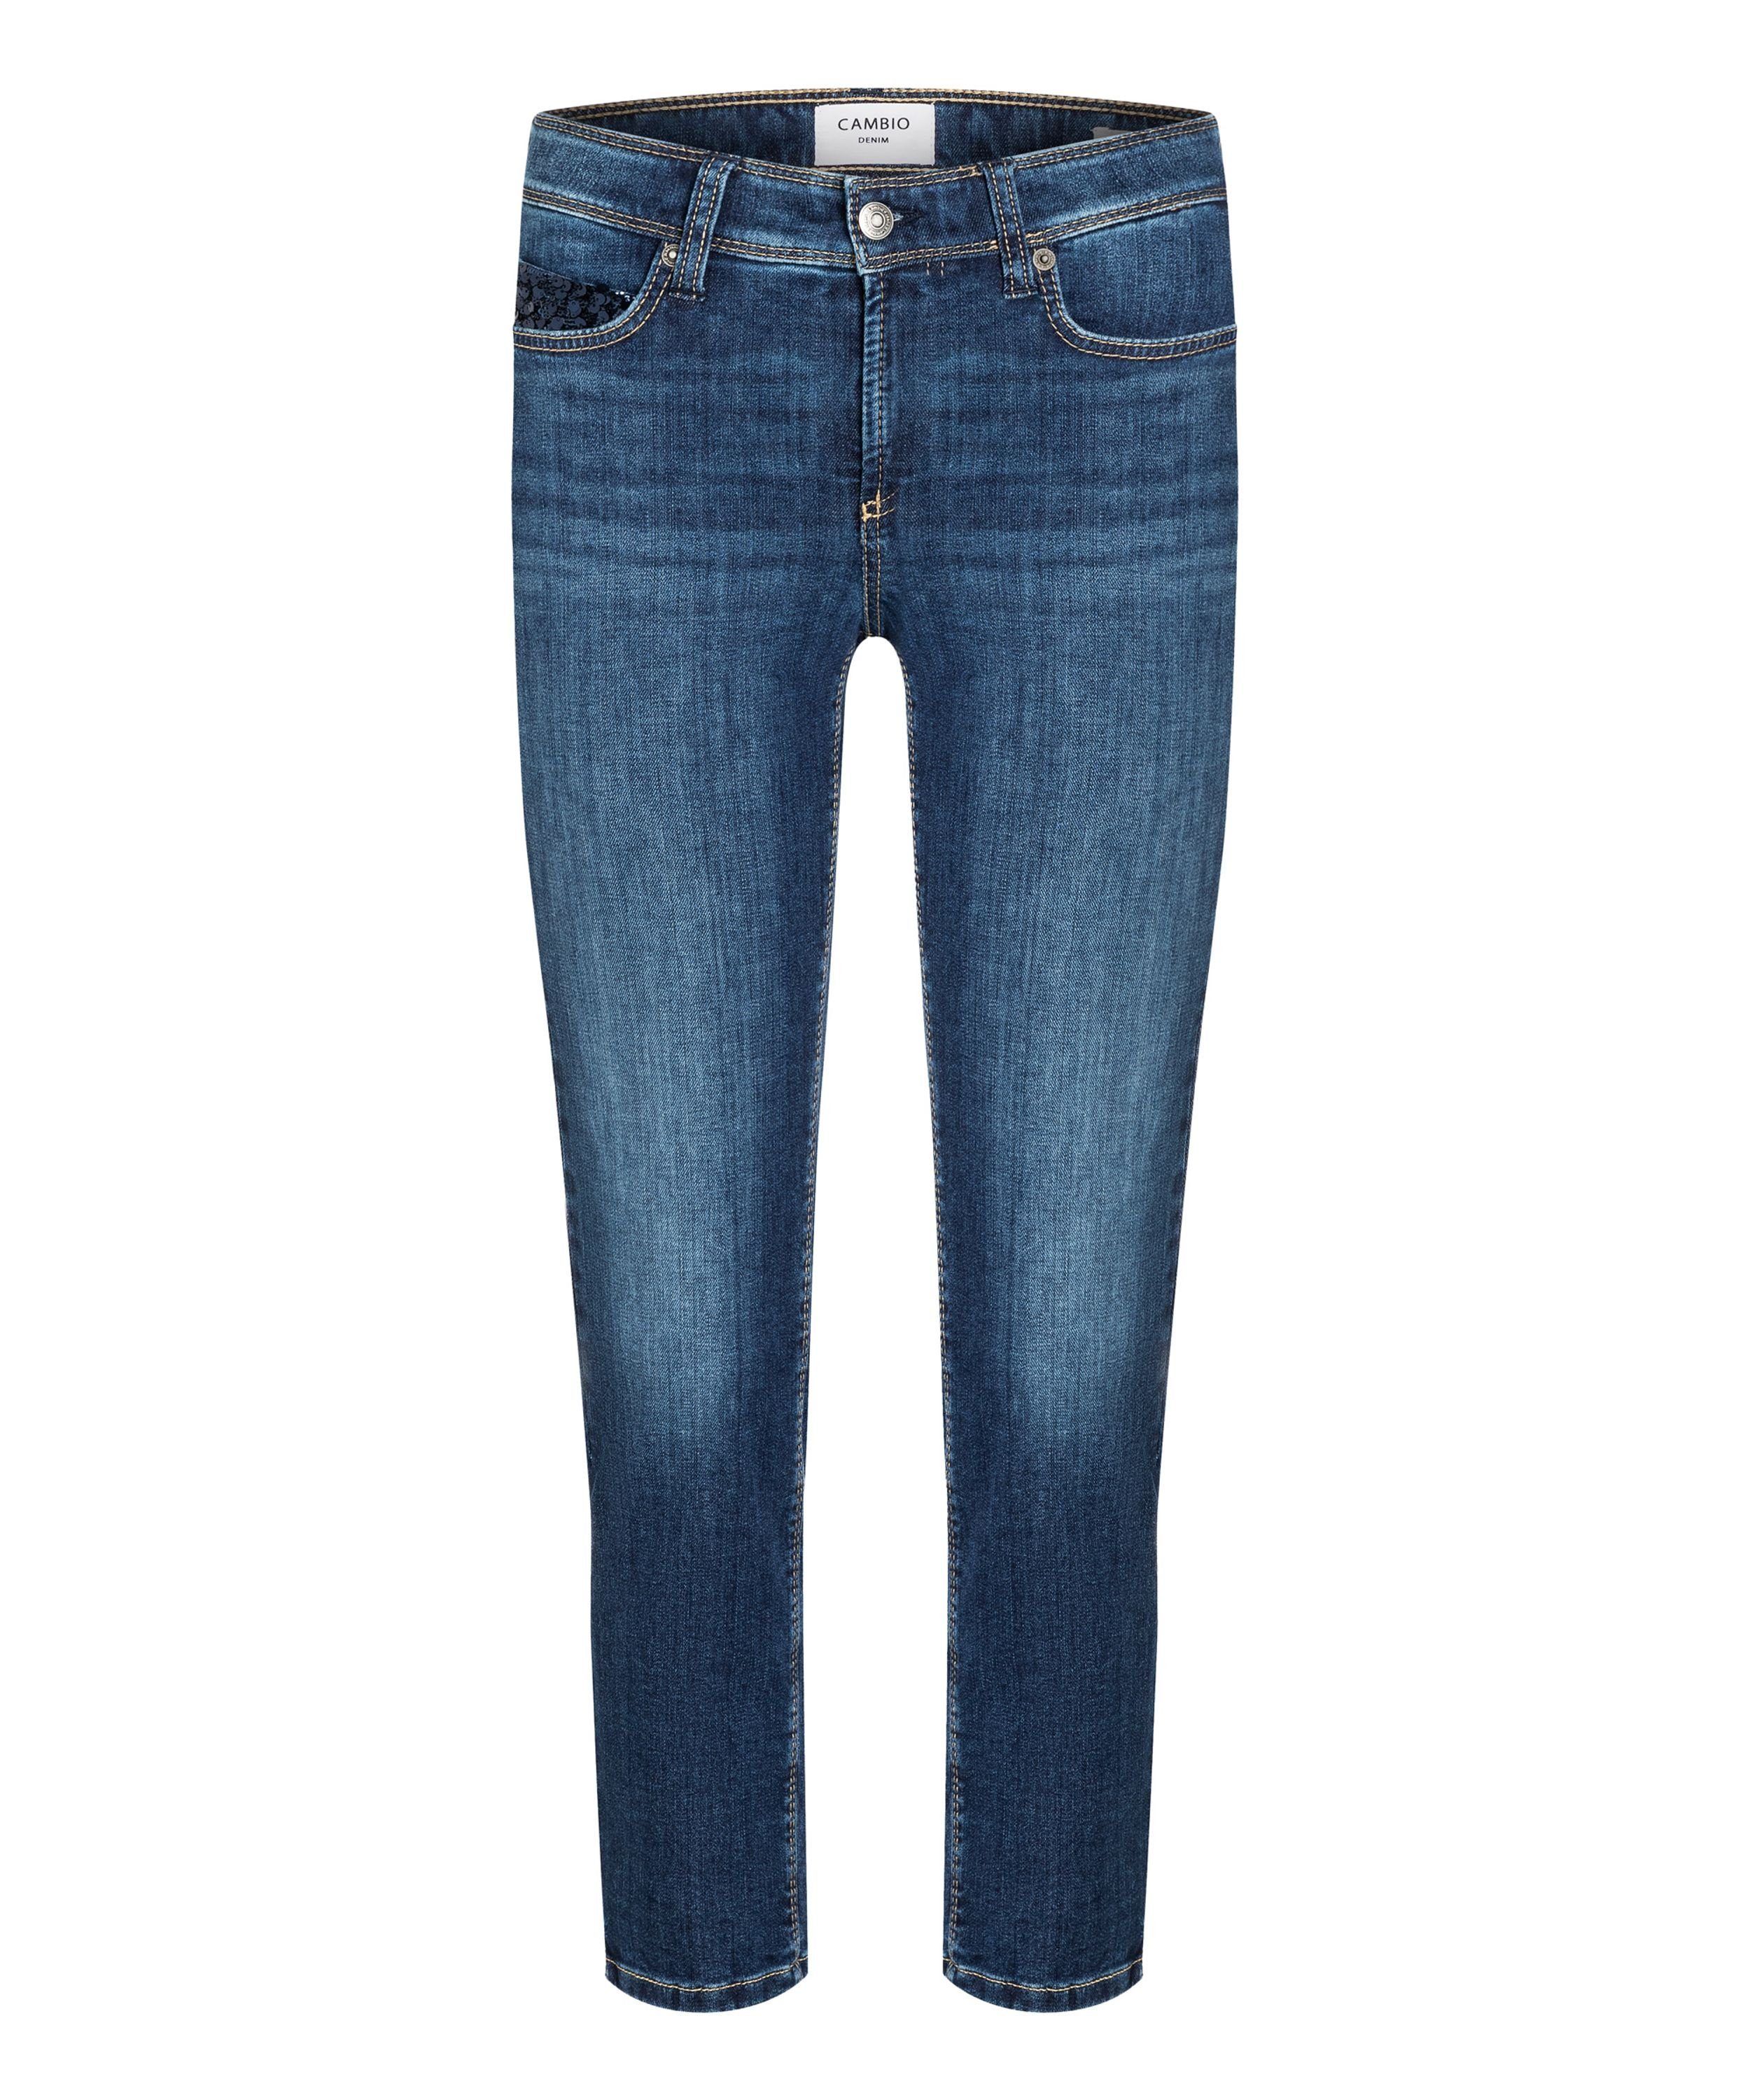 Cambio Jeans für Damen online kaufen | OTTO